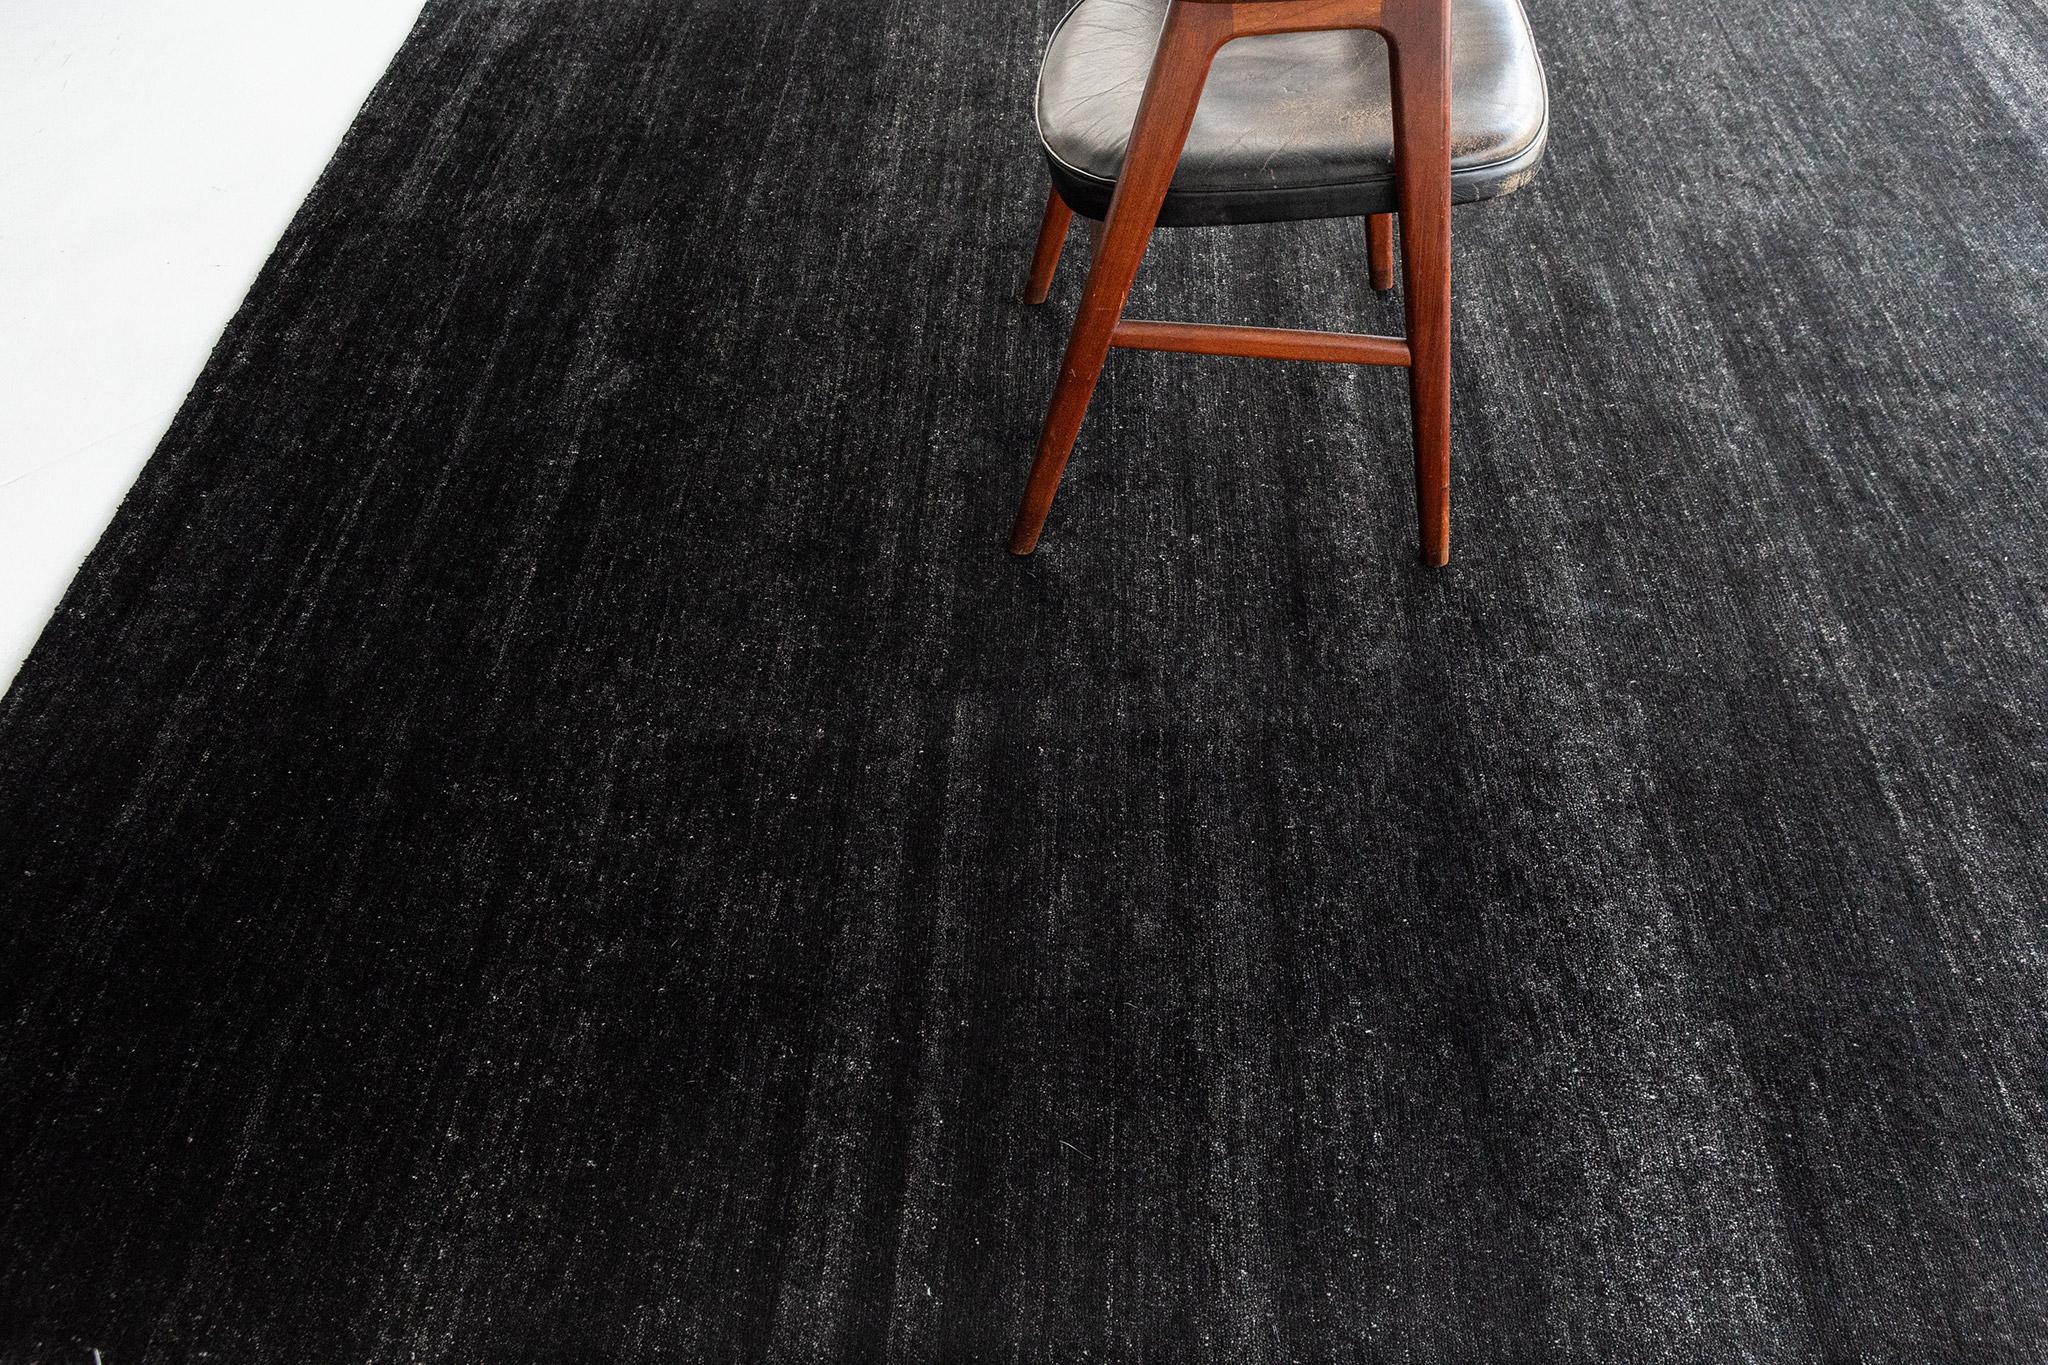 Dara' est un tapis en soie de bambou solide dans un ton noir parfait. Cette simplicité n'enlève rien à la qualité luxueuse et à la brillance du tapis. Dara est un tapis splendide pour tout espace design.

Numéro de tapis
20287
Taille
7' 9